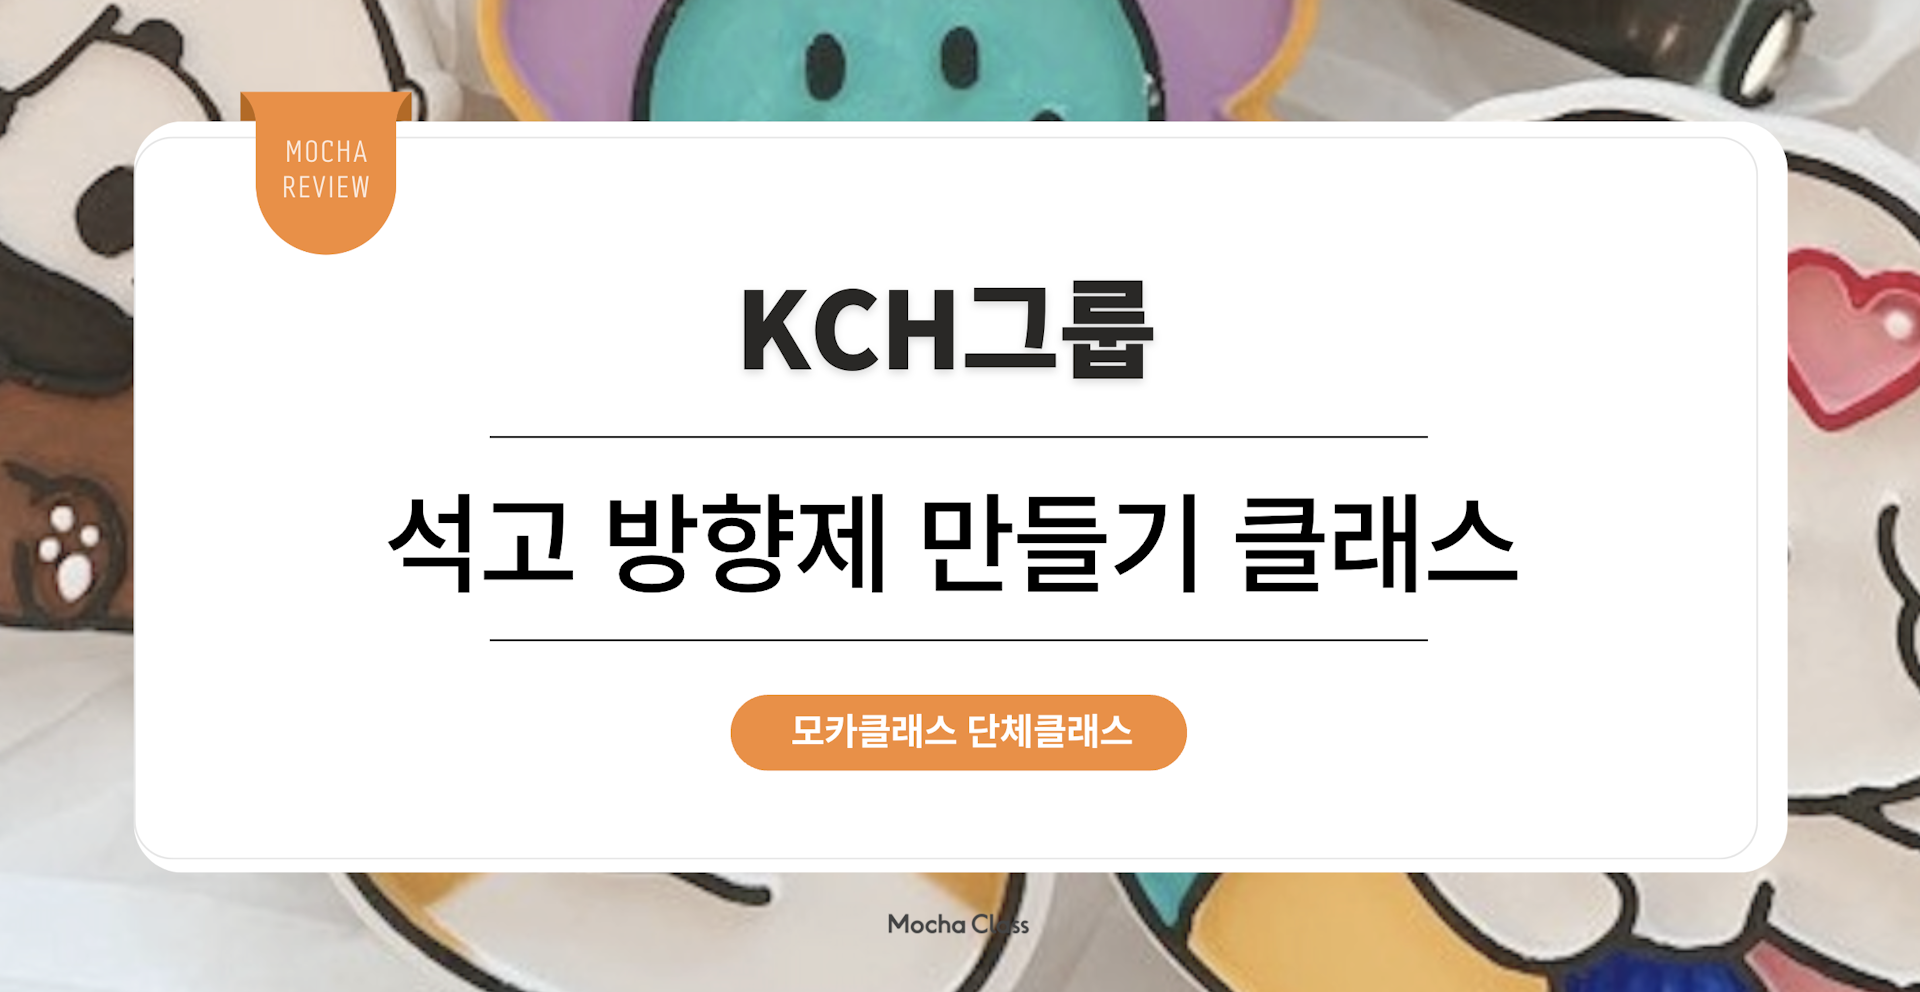  [문화체험프로그램] KCH그룹 : 석고 방향제 만들기 클래스